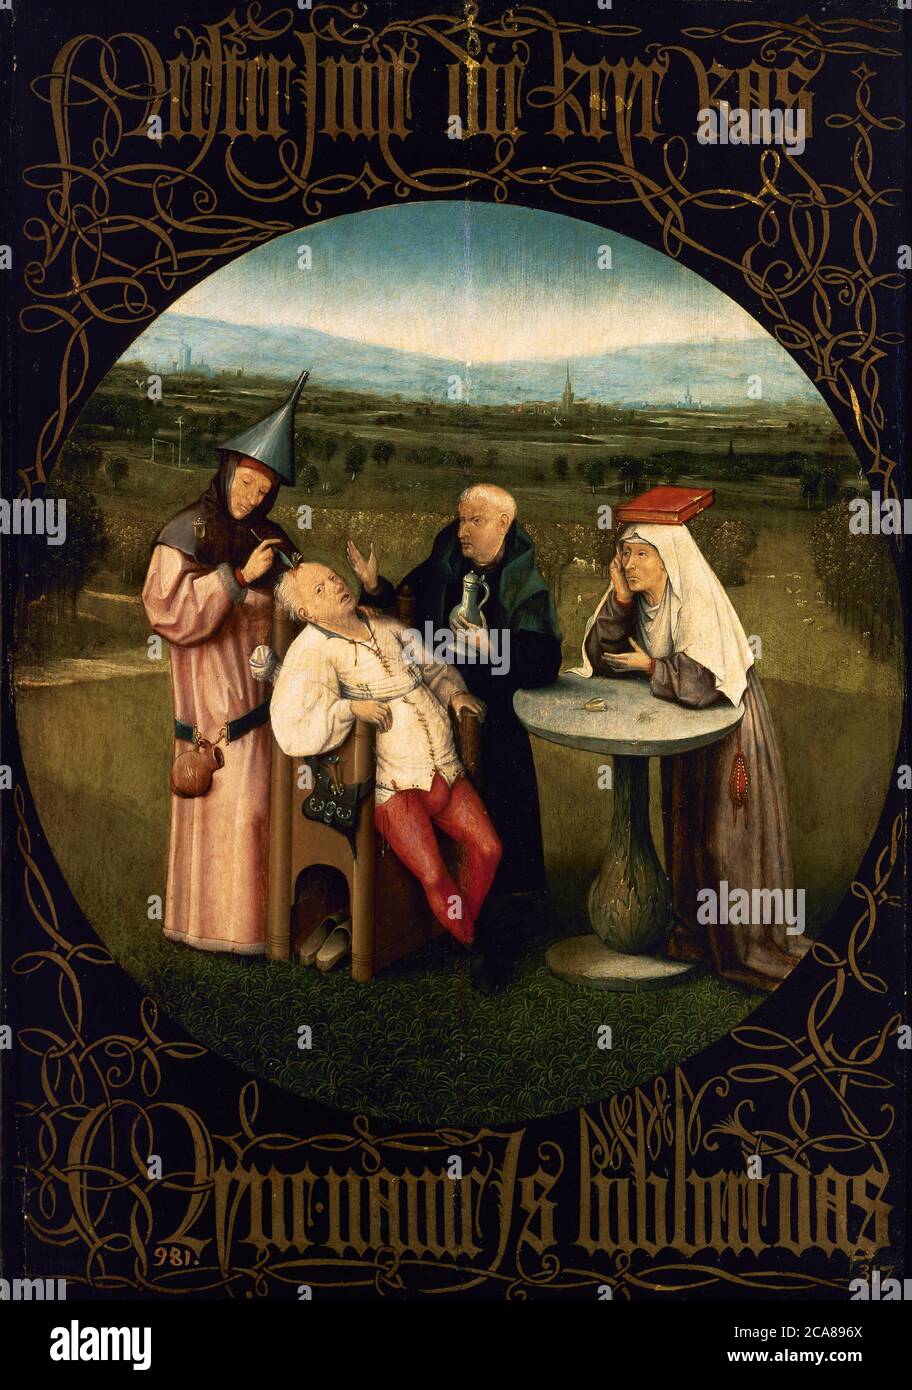 Hieronymus Bosch (1450-1516). Peintre et graveur hollandais, appartenant à l'école flamande. L'extraction de la Pierre de folie, 1501-1505. Huile sur panneau de chêne (48,5 x 34,5 cm). Musée du Prado. Madrid. Espagne. Banque D'Images